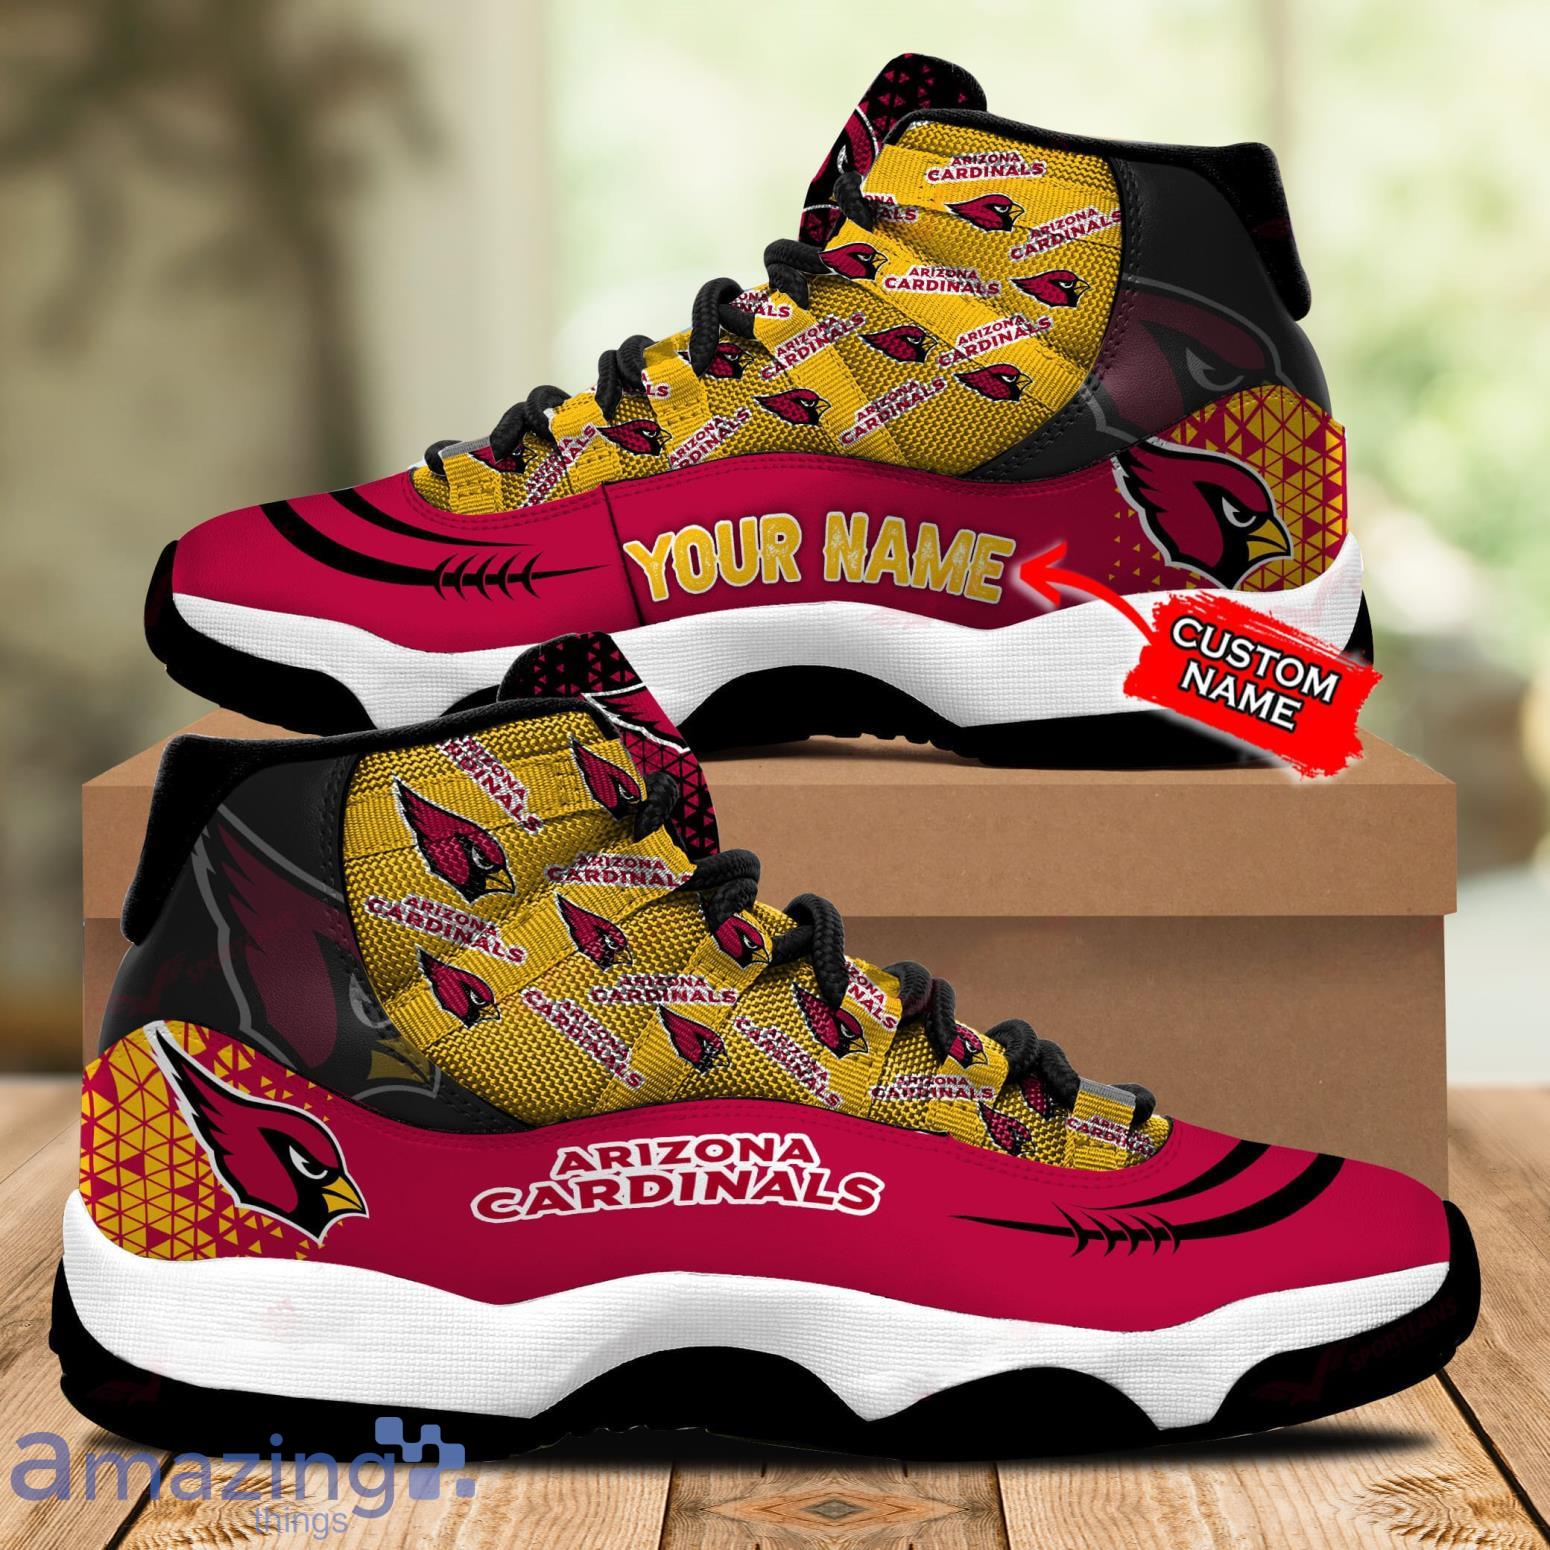 Arizona Cardinals NFL Custom Name Air Jordan 11 Sneakers Shoes For Fans